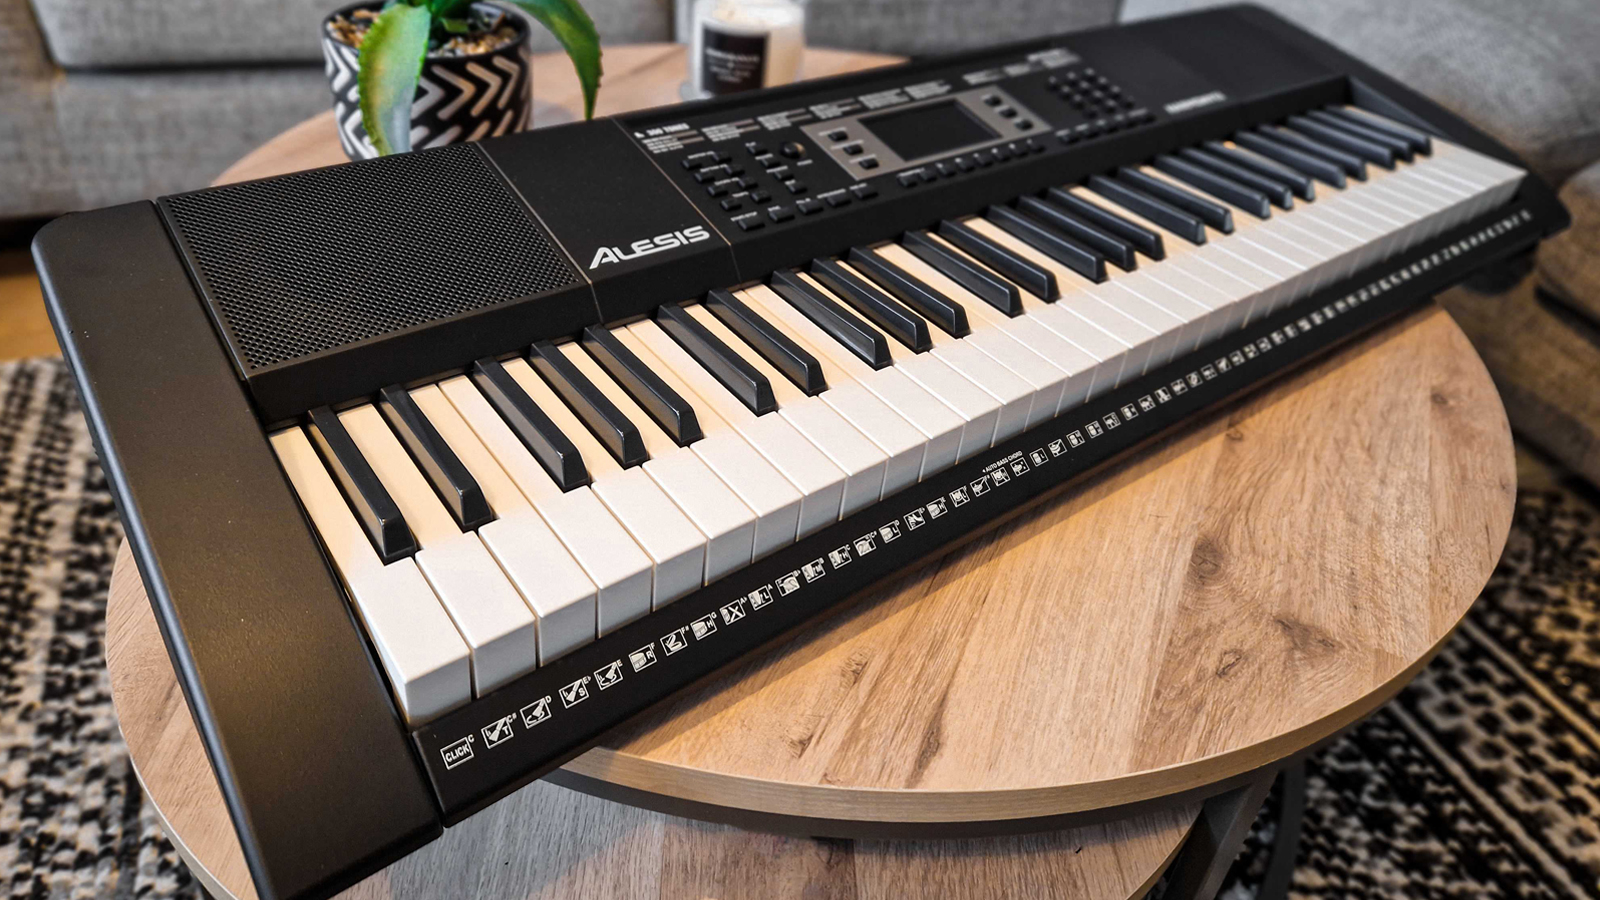 Alesis Harmony 61 MkIII 61-Key Portable Keyboard, Built-In Speakers